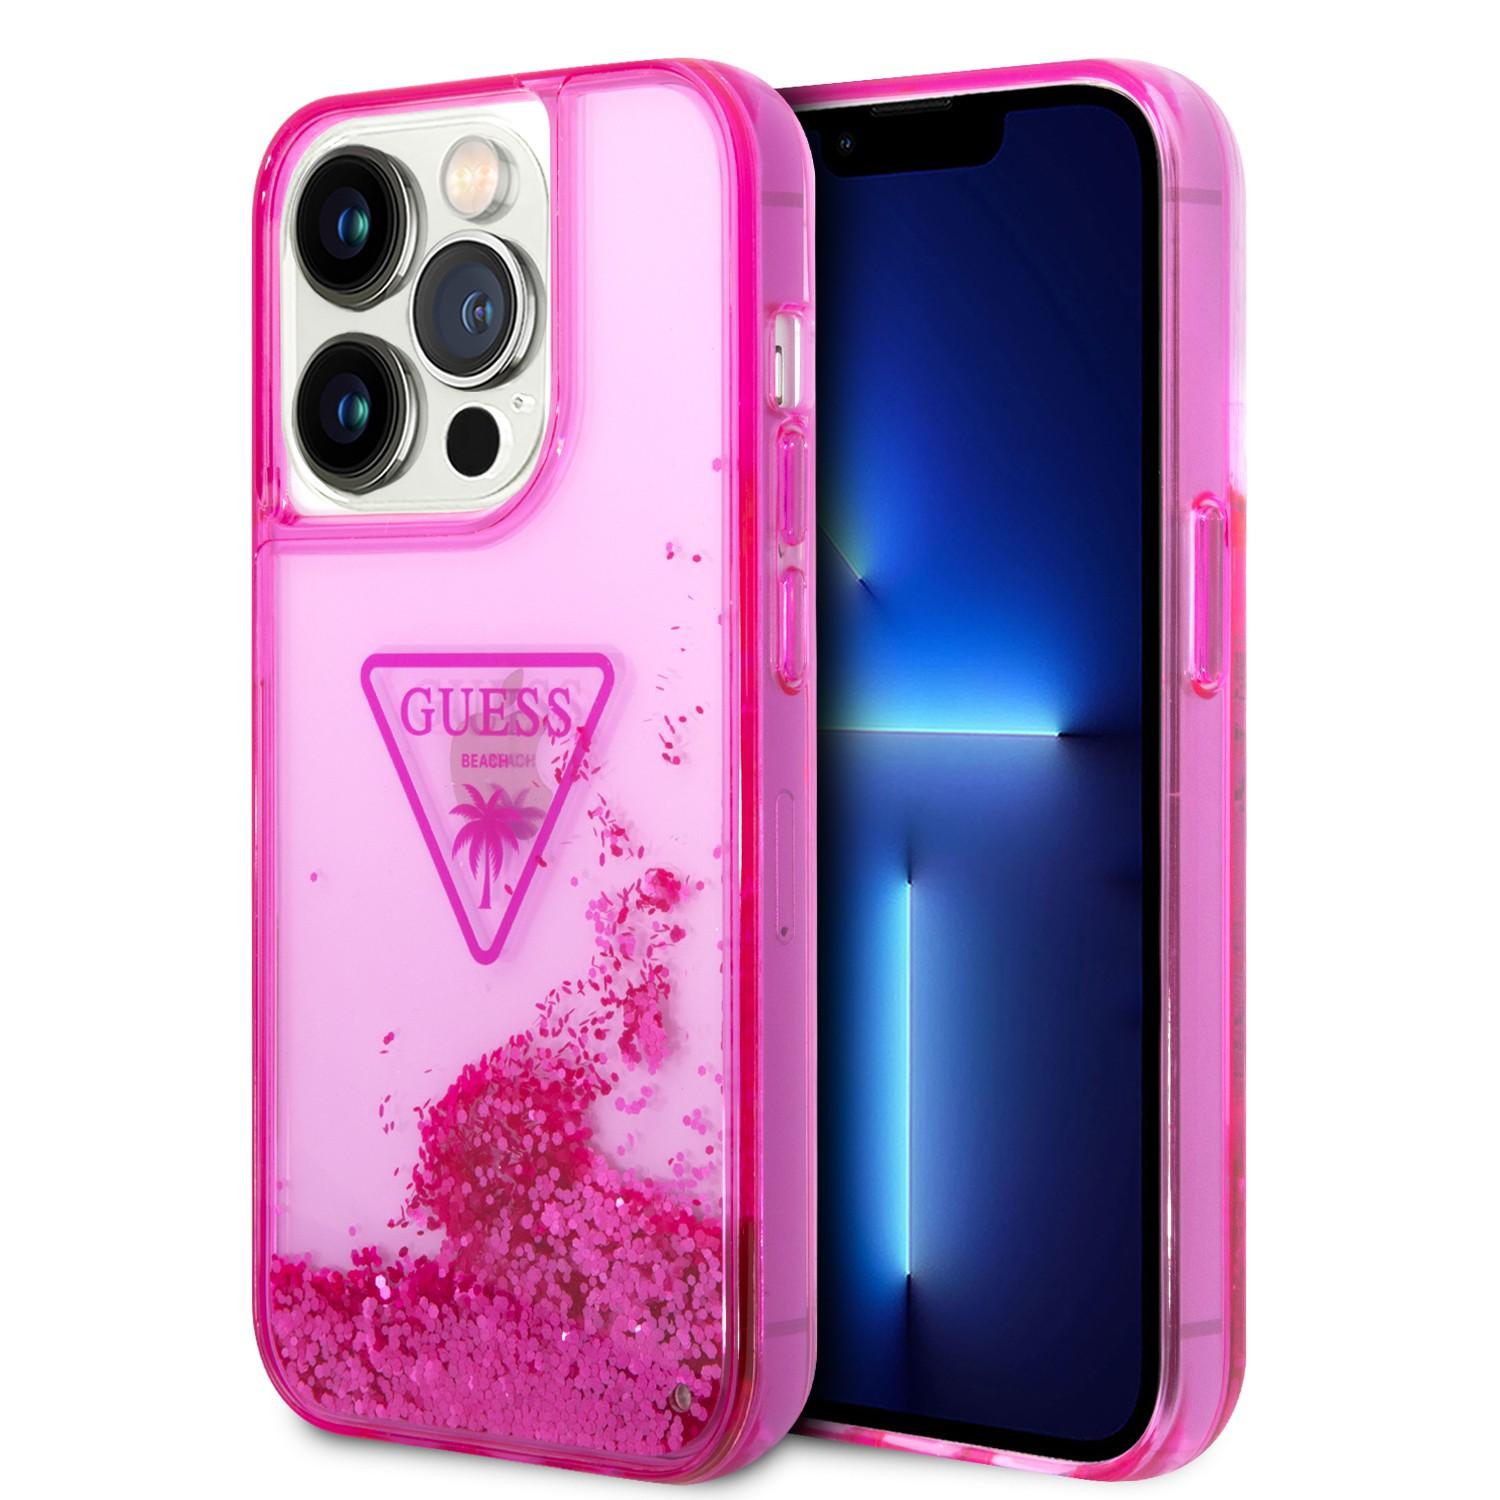 كفر ايفون 14 برو زهر جيس Guess Liquid Glitter Case With Translucent Triangle Logo For iPhone 14 Pro Pink - cG9zdDoxMzg0OTMz